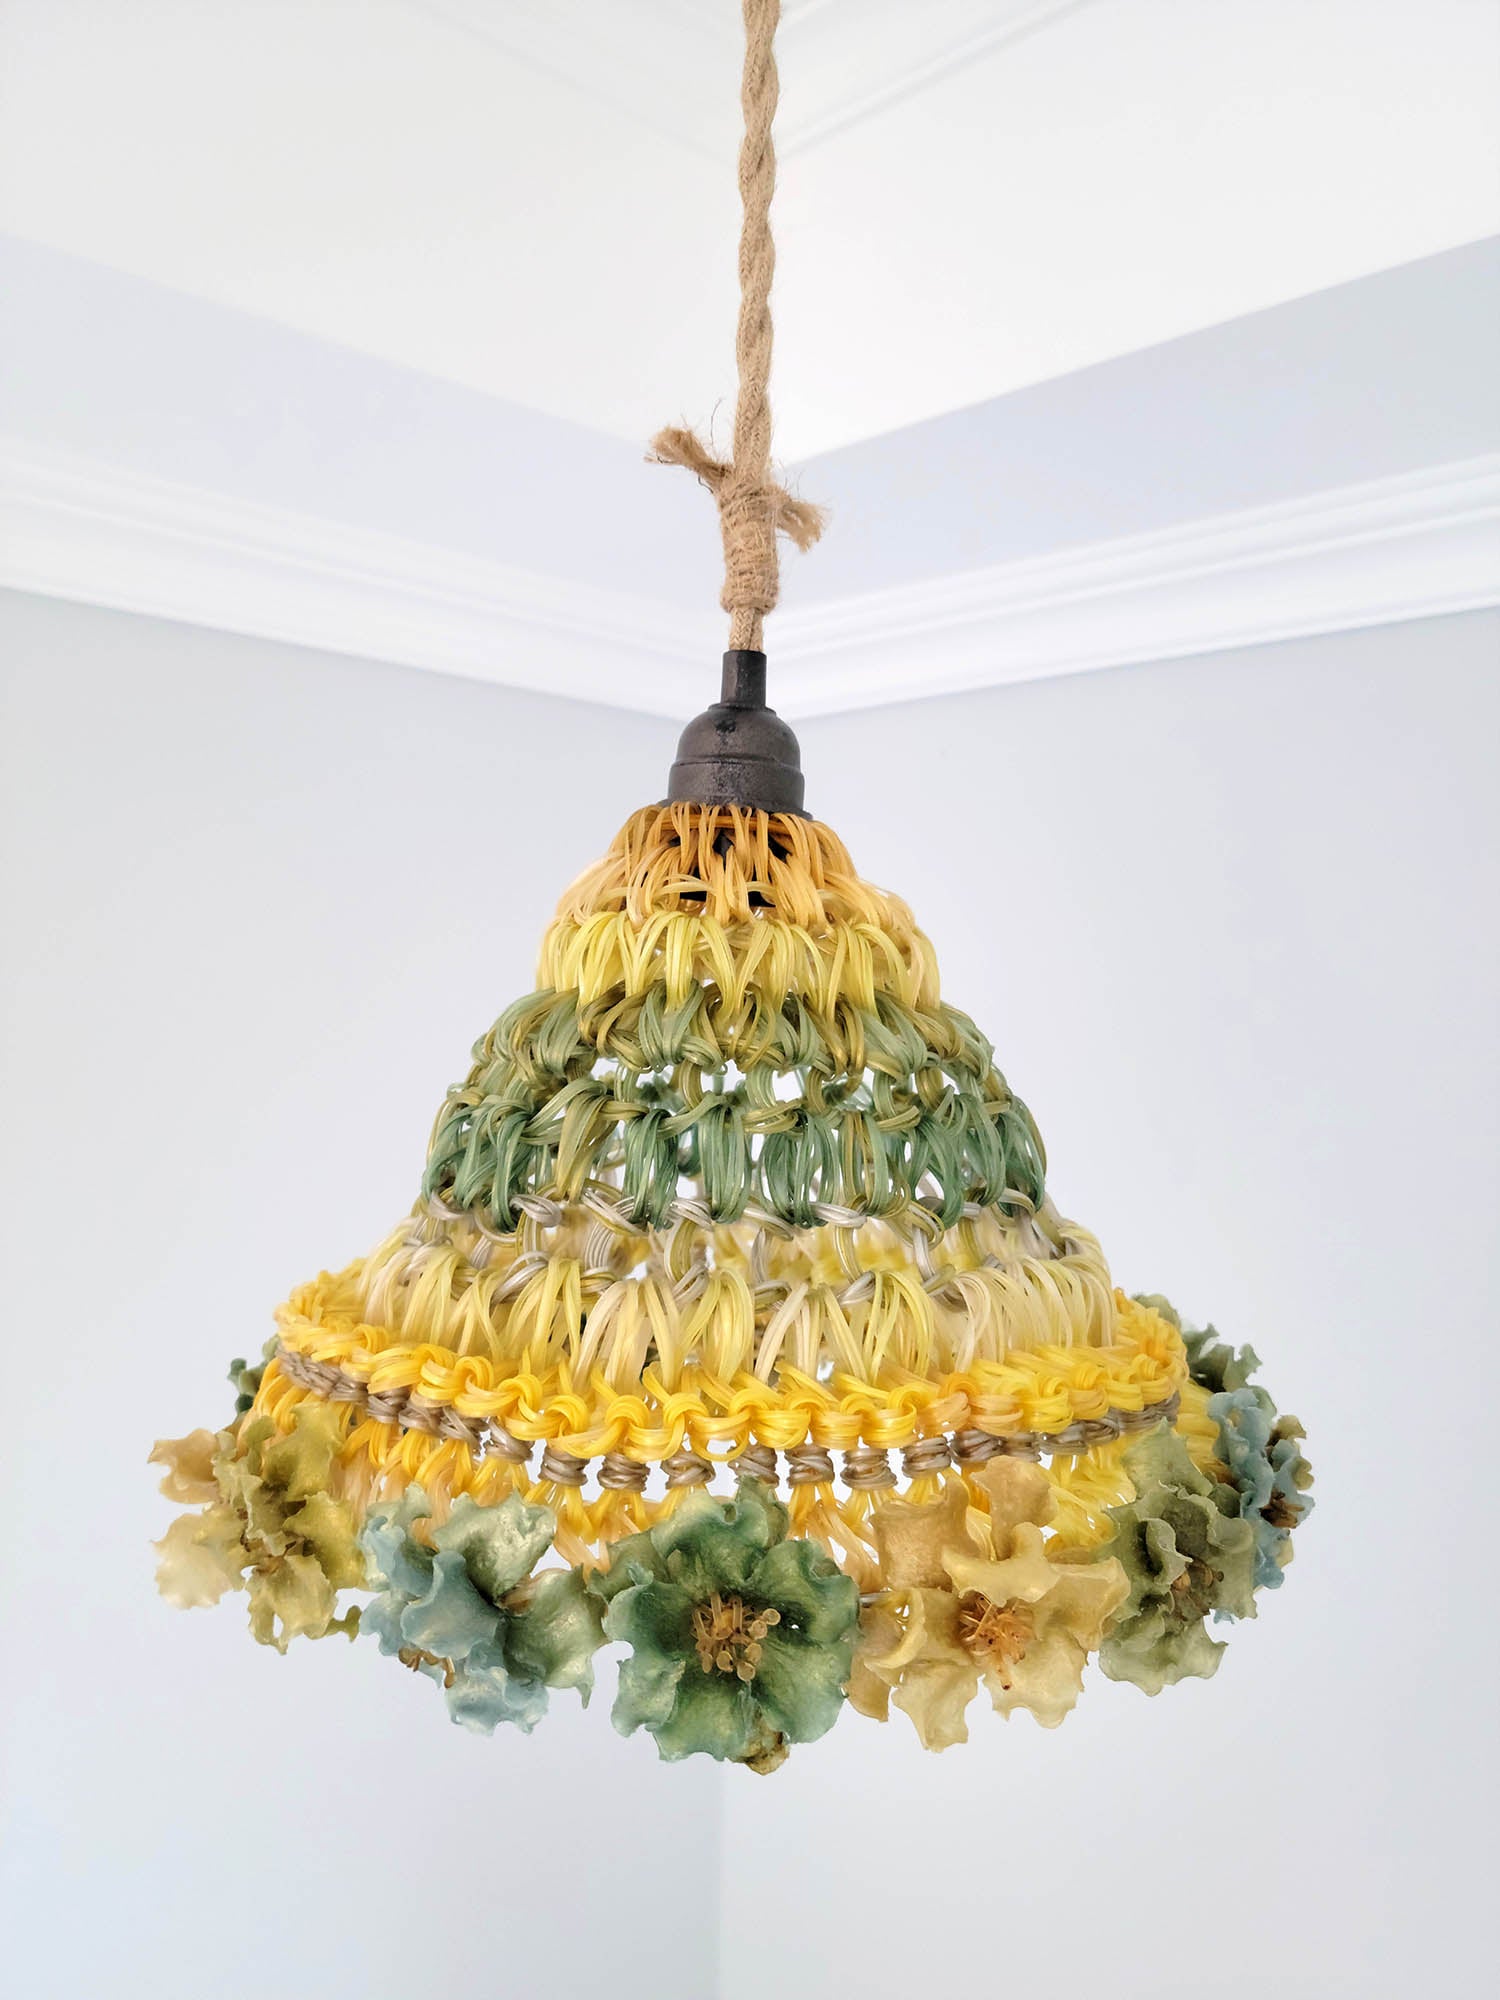 Primal Flora Pendant Lamp by Yi Hsuan Sung at Flora Gild